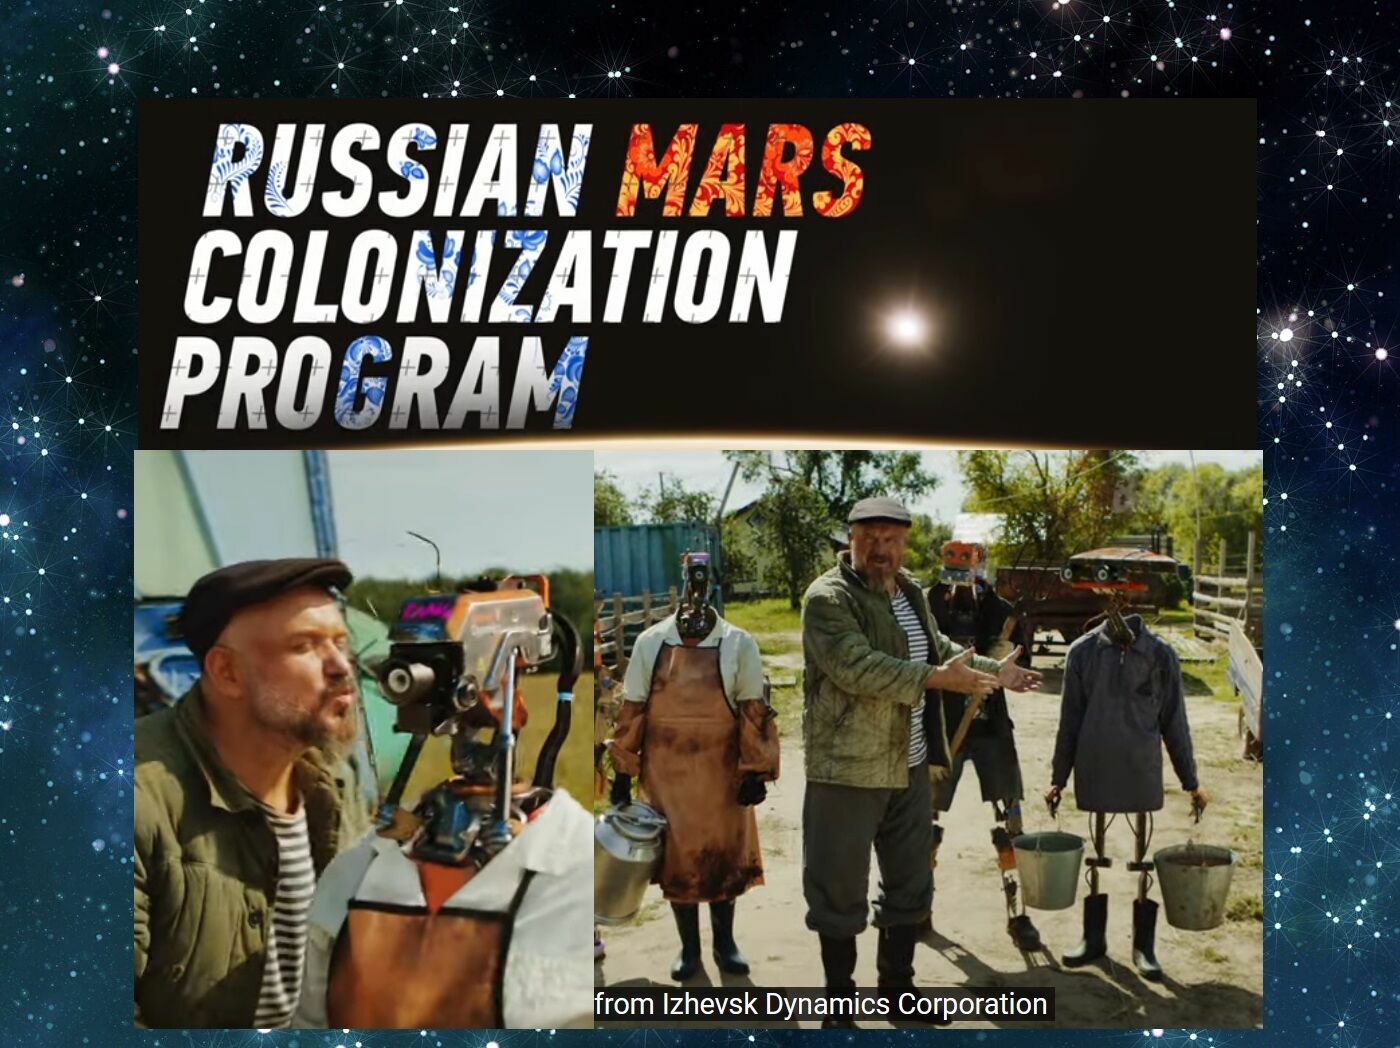 Любовь и андроиды: ролик о русской киберпанк-деревушке на Марсе покоряет интернет